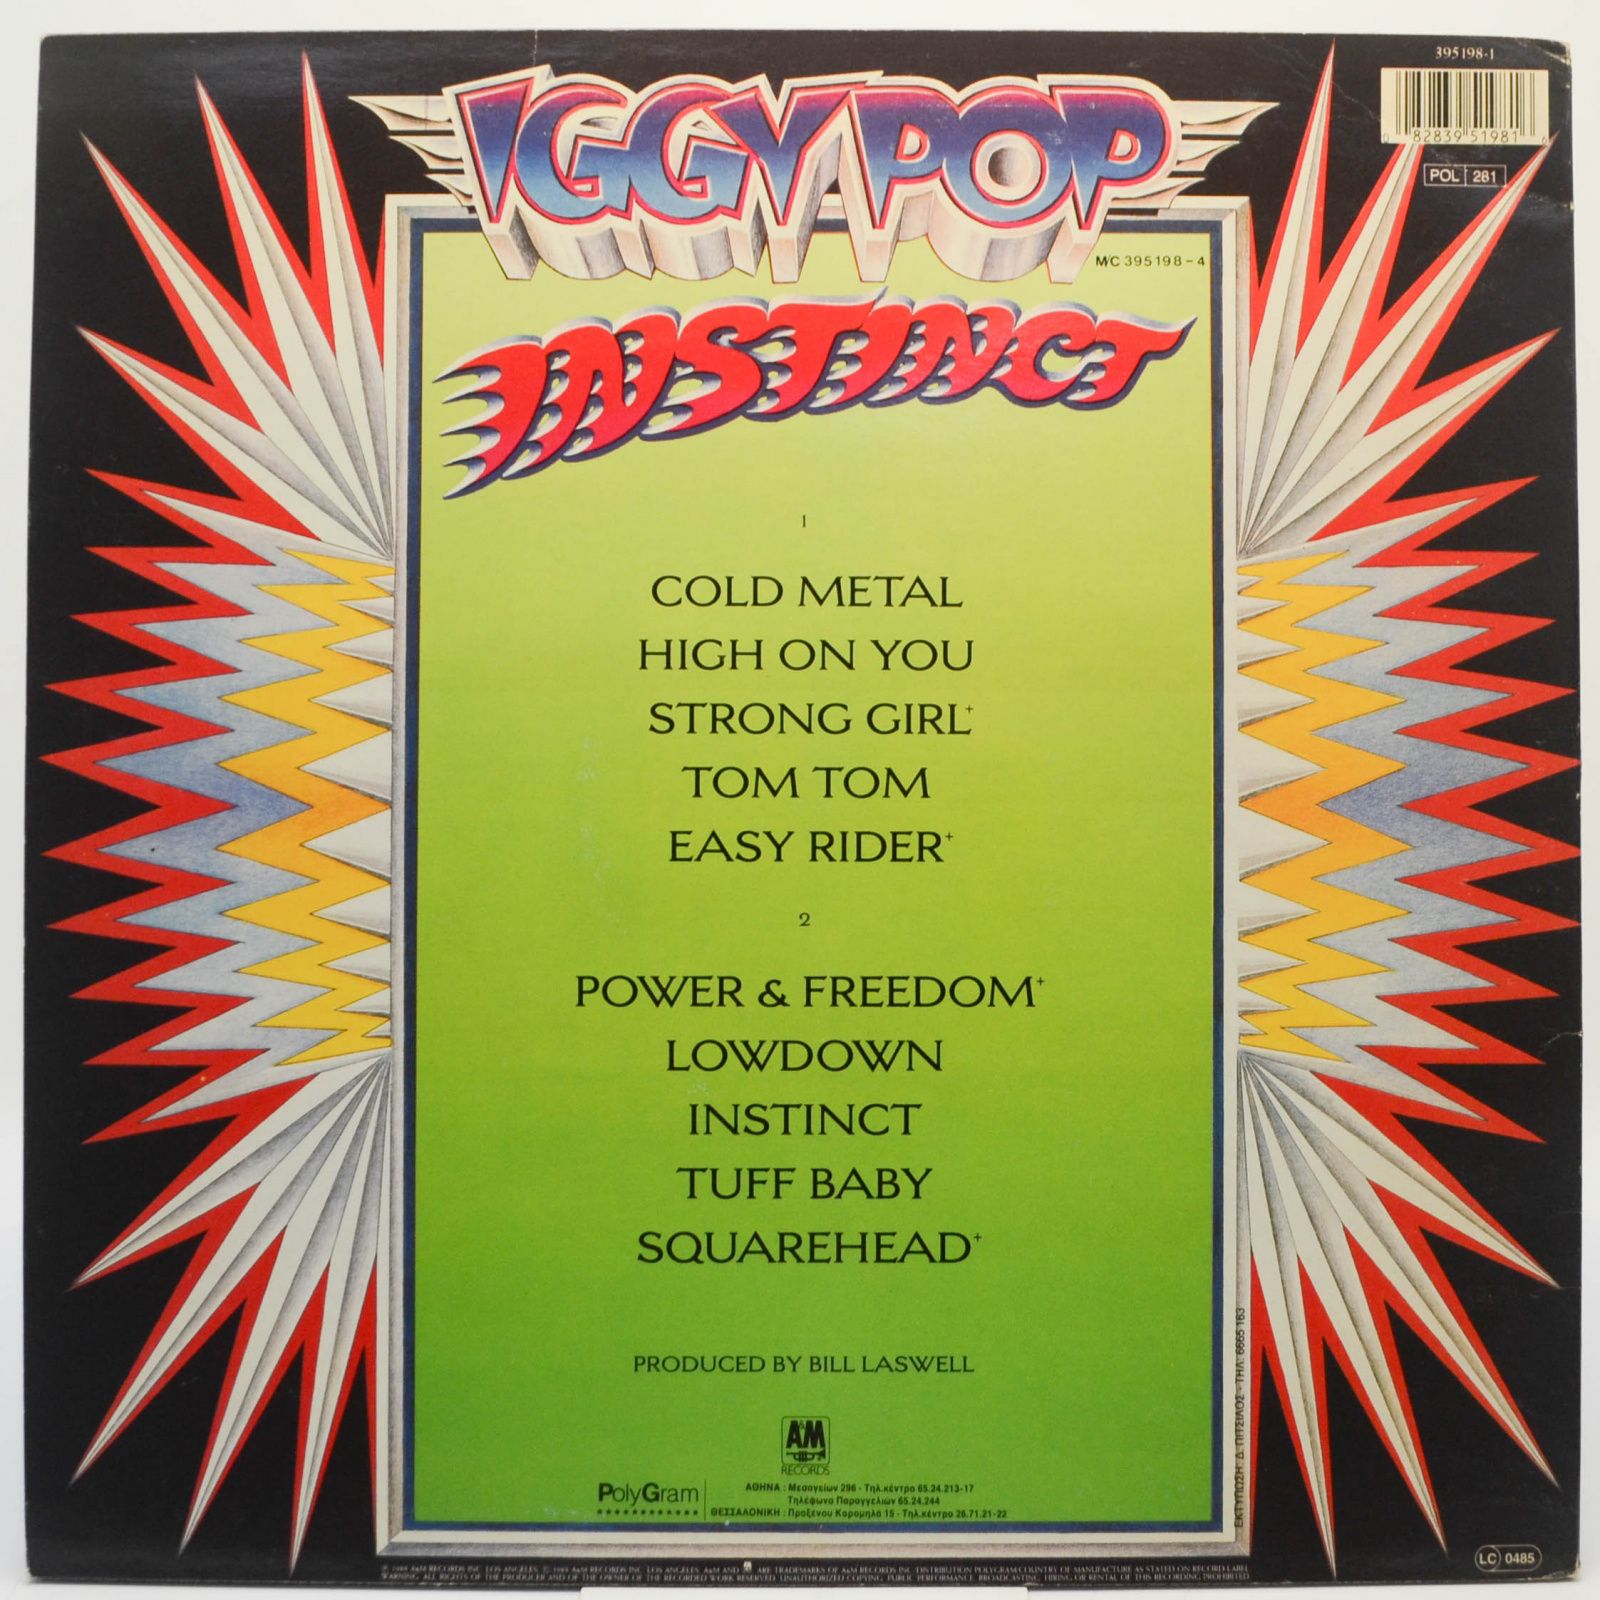 Iggy Pop — Instinct, 1988